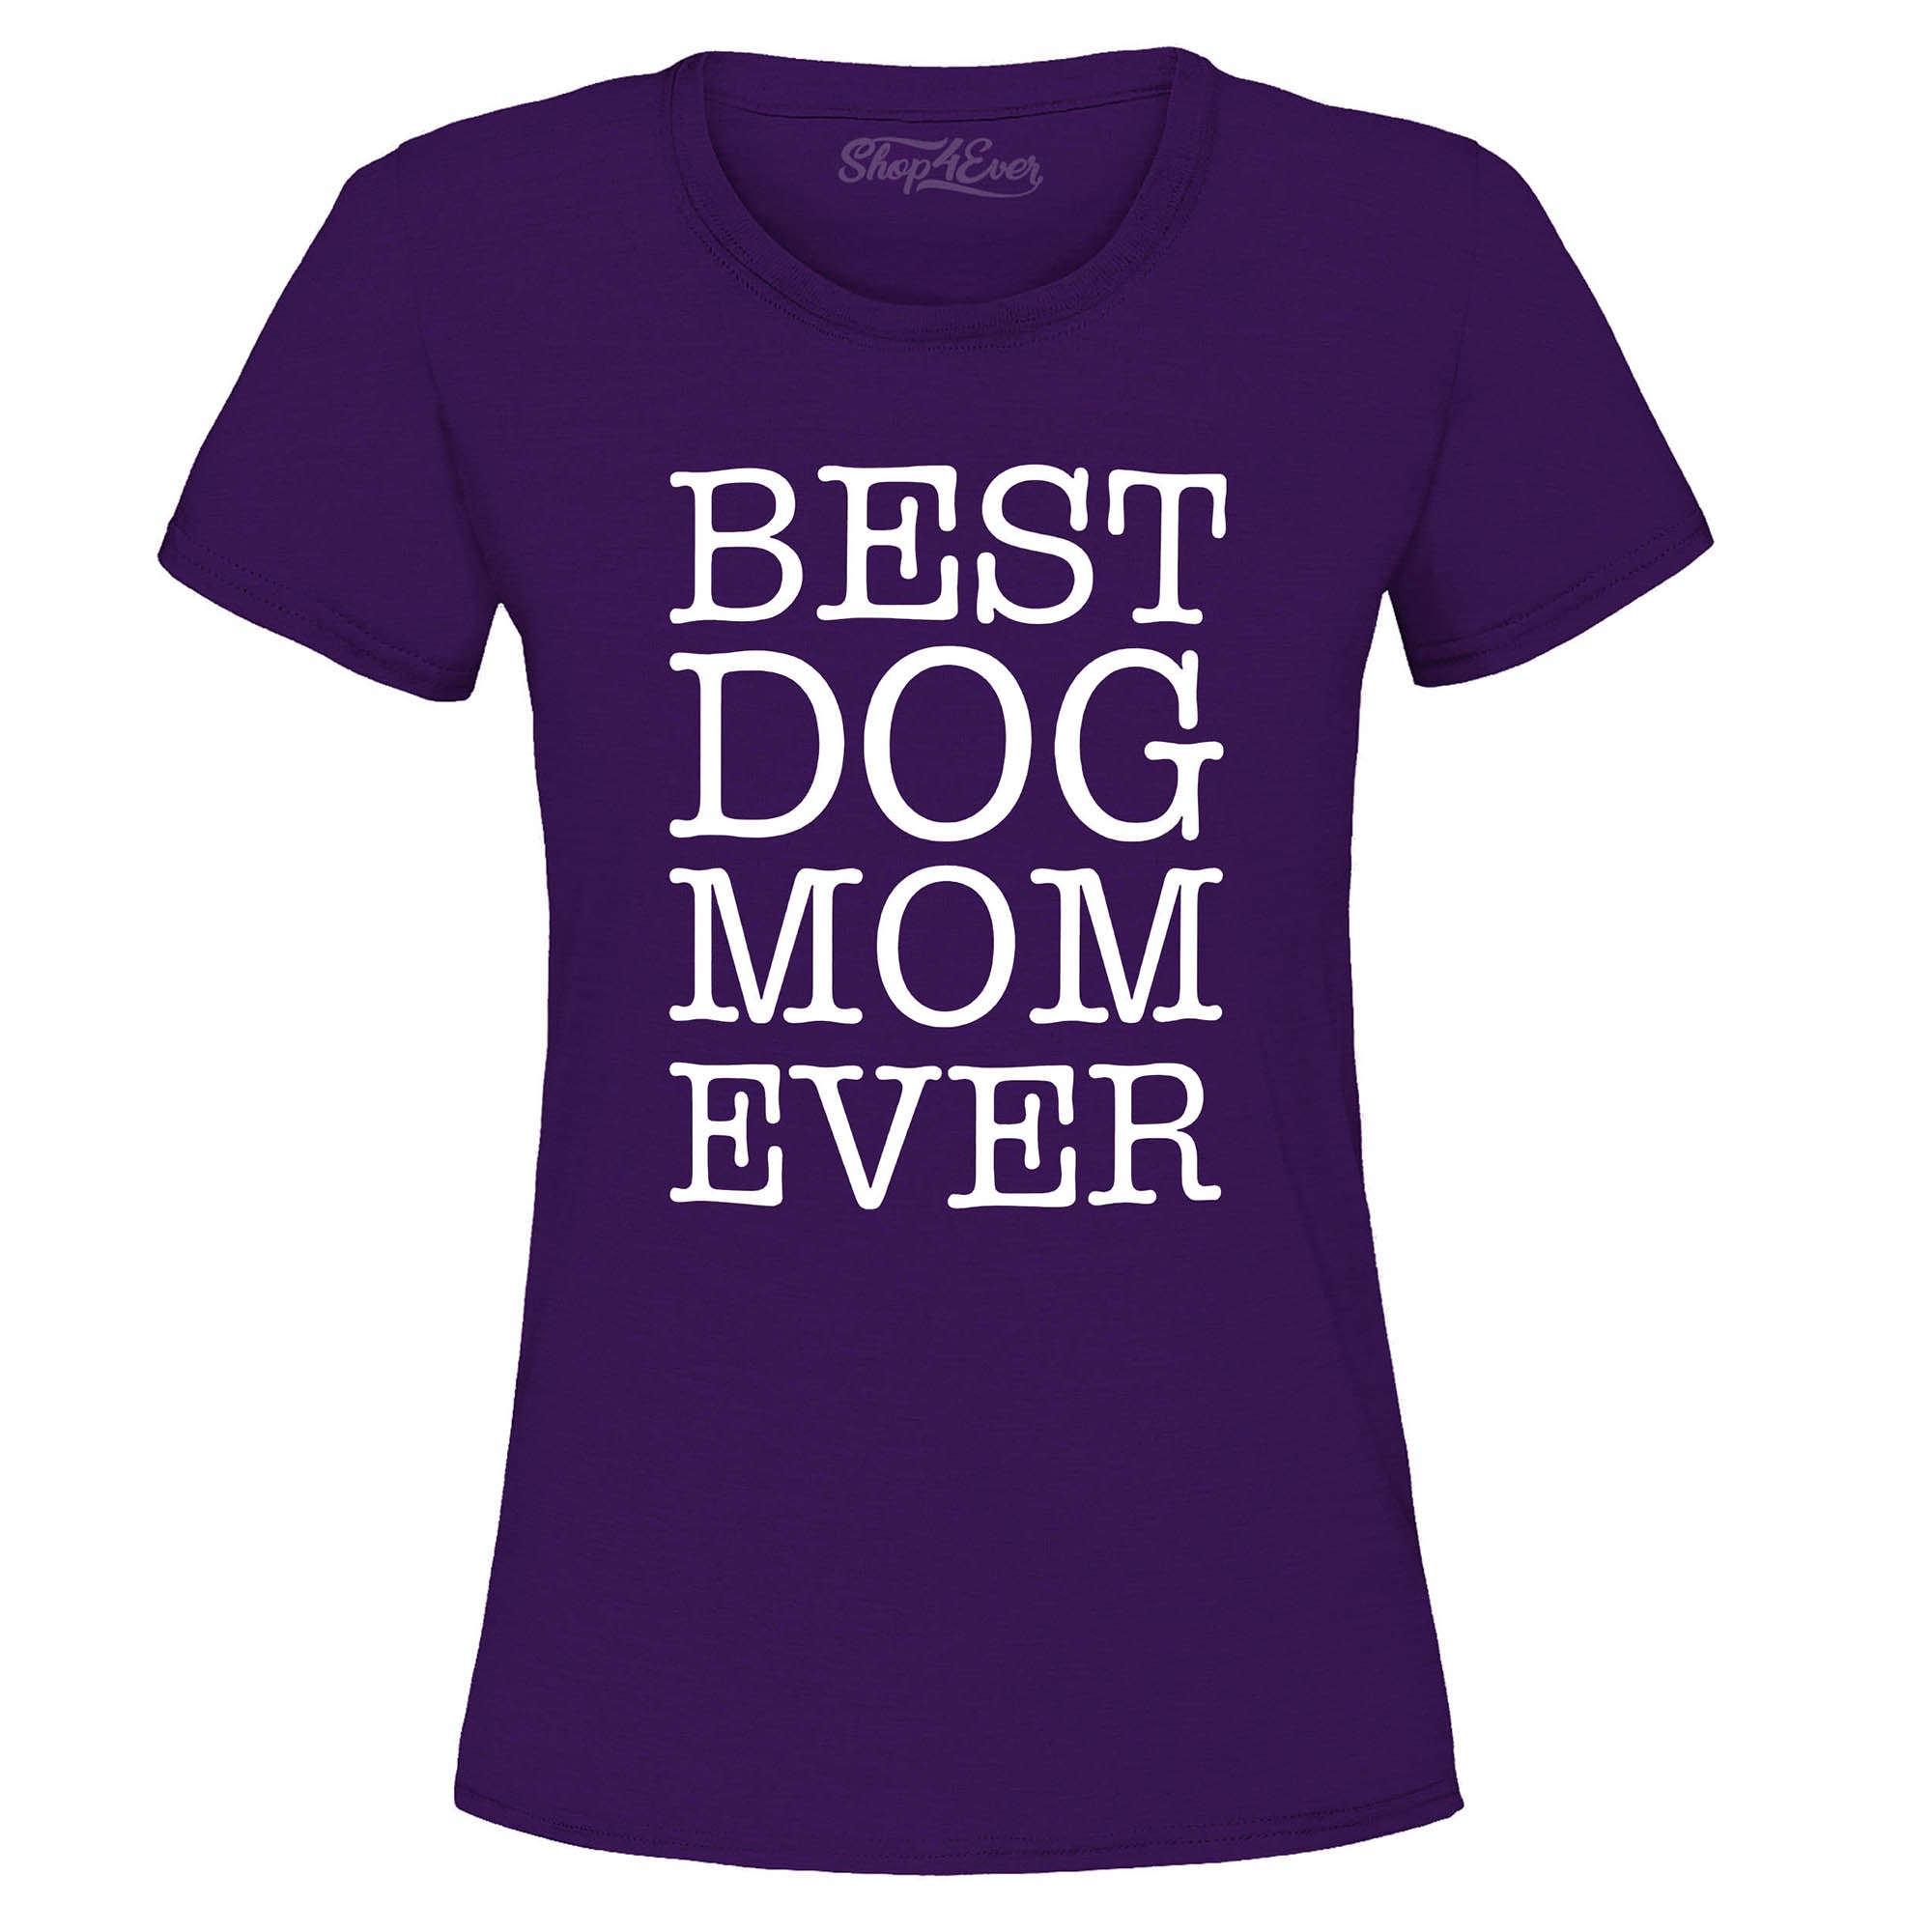 Best Dog Mom Ever Women's T-Shirt